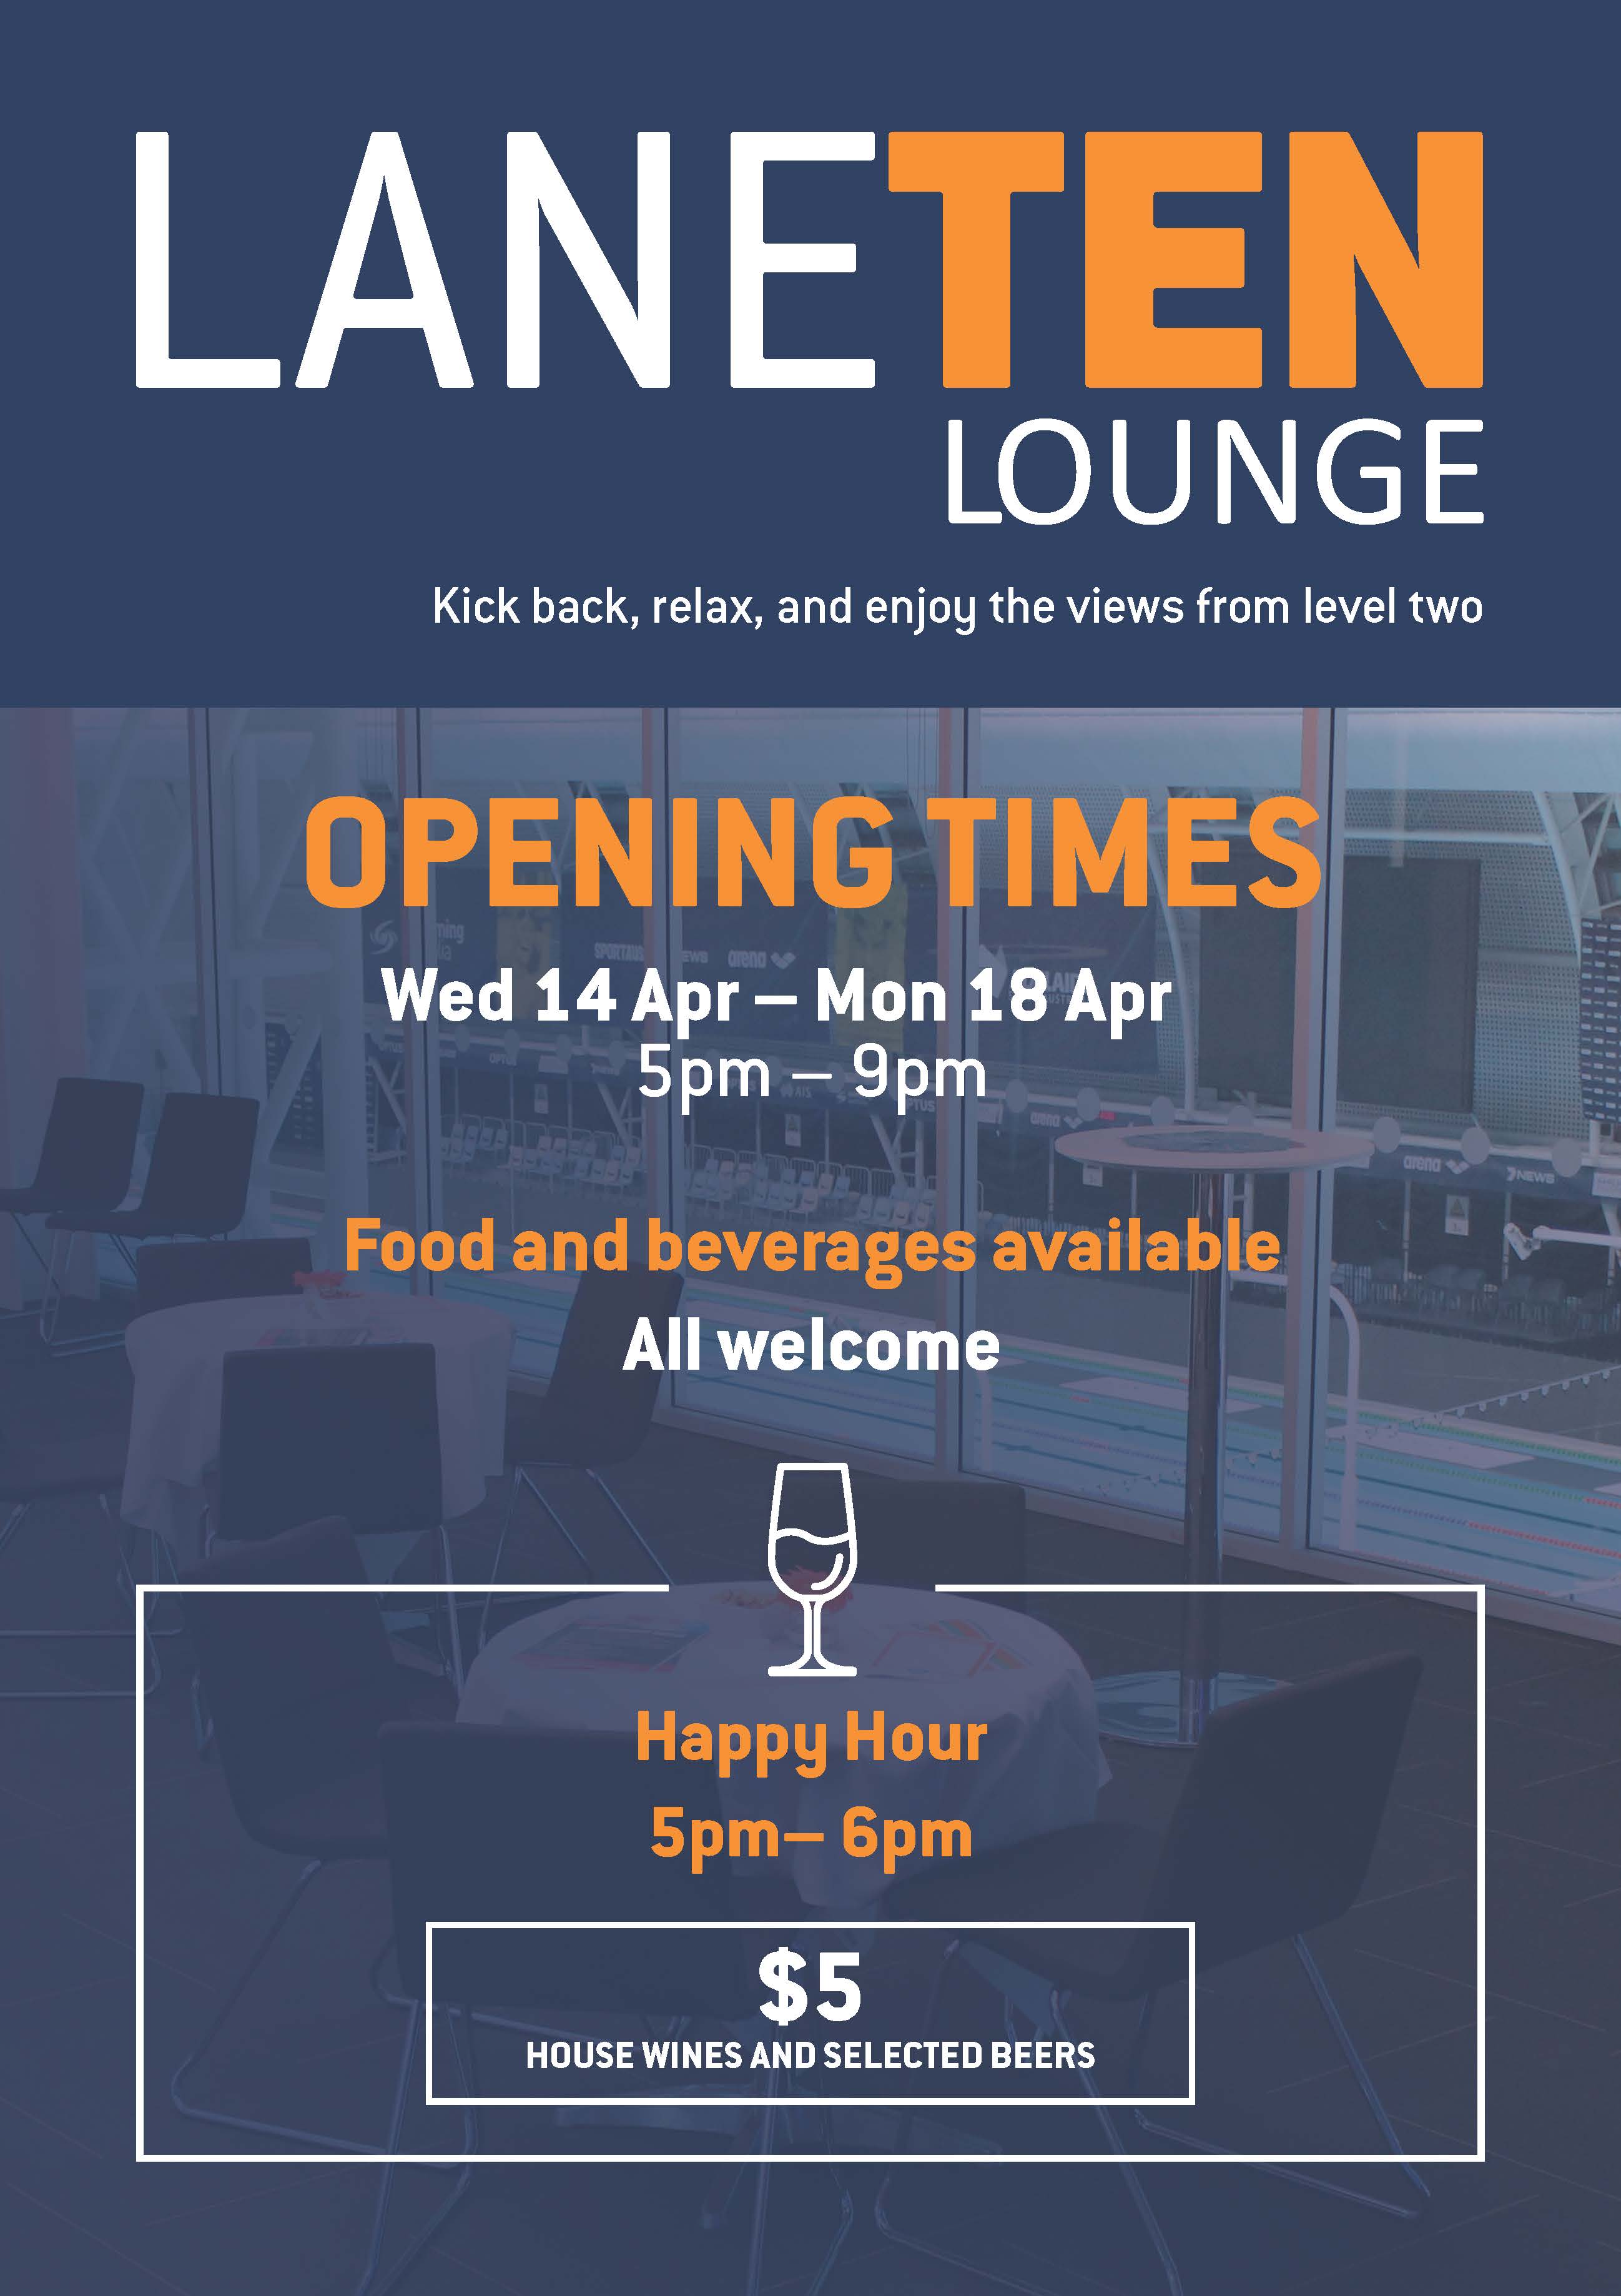 Lane 10 Lounge